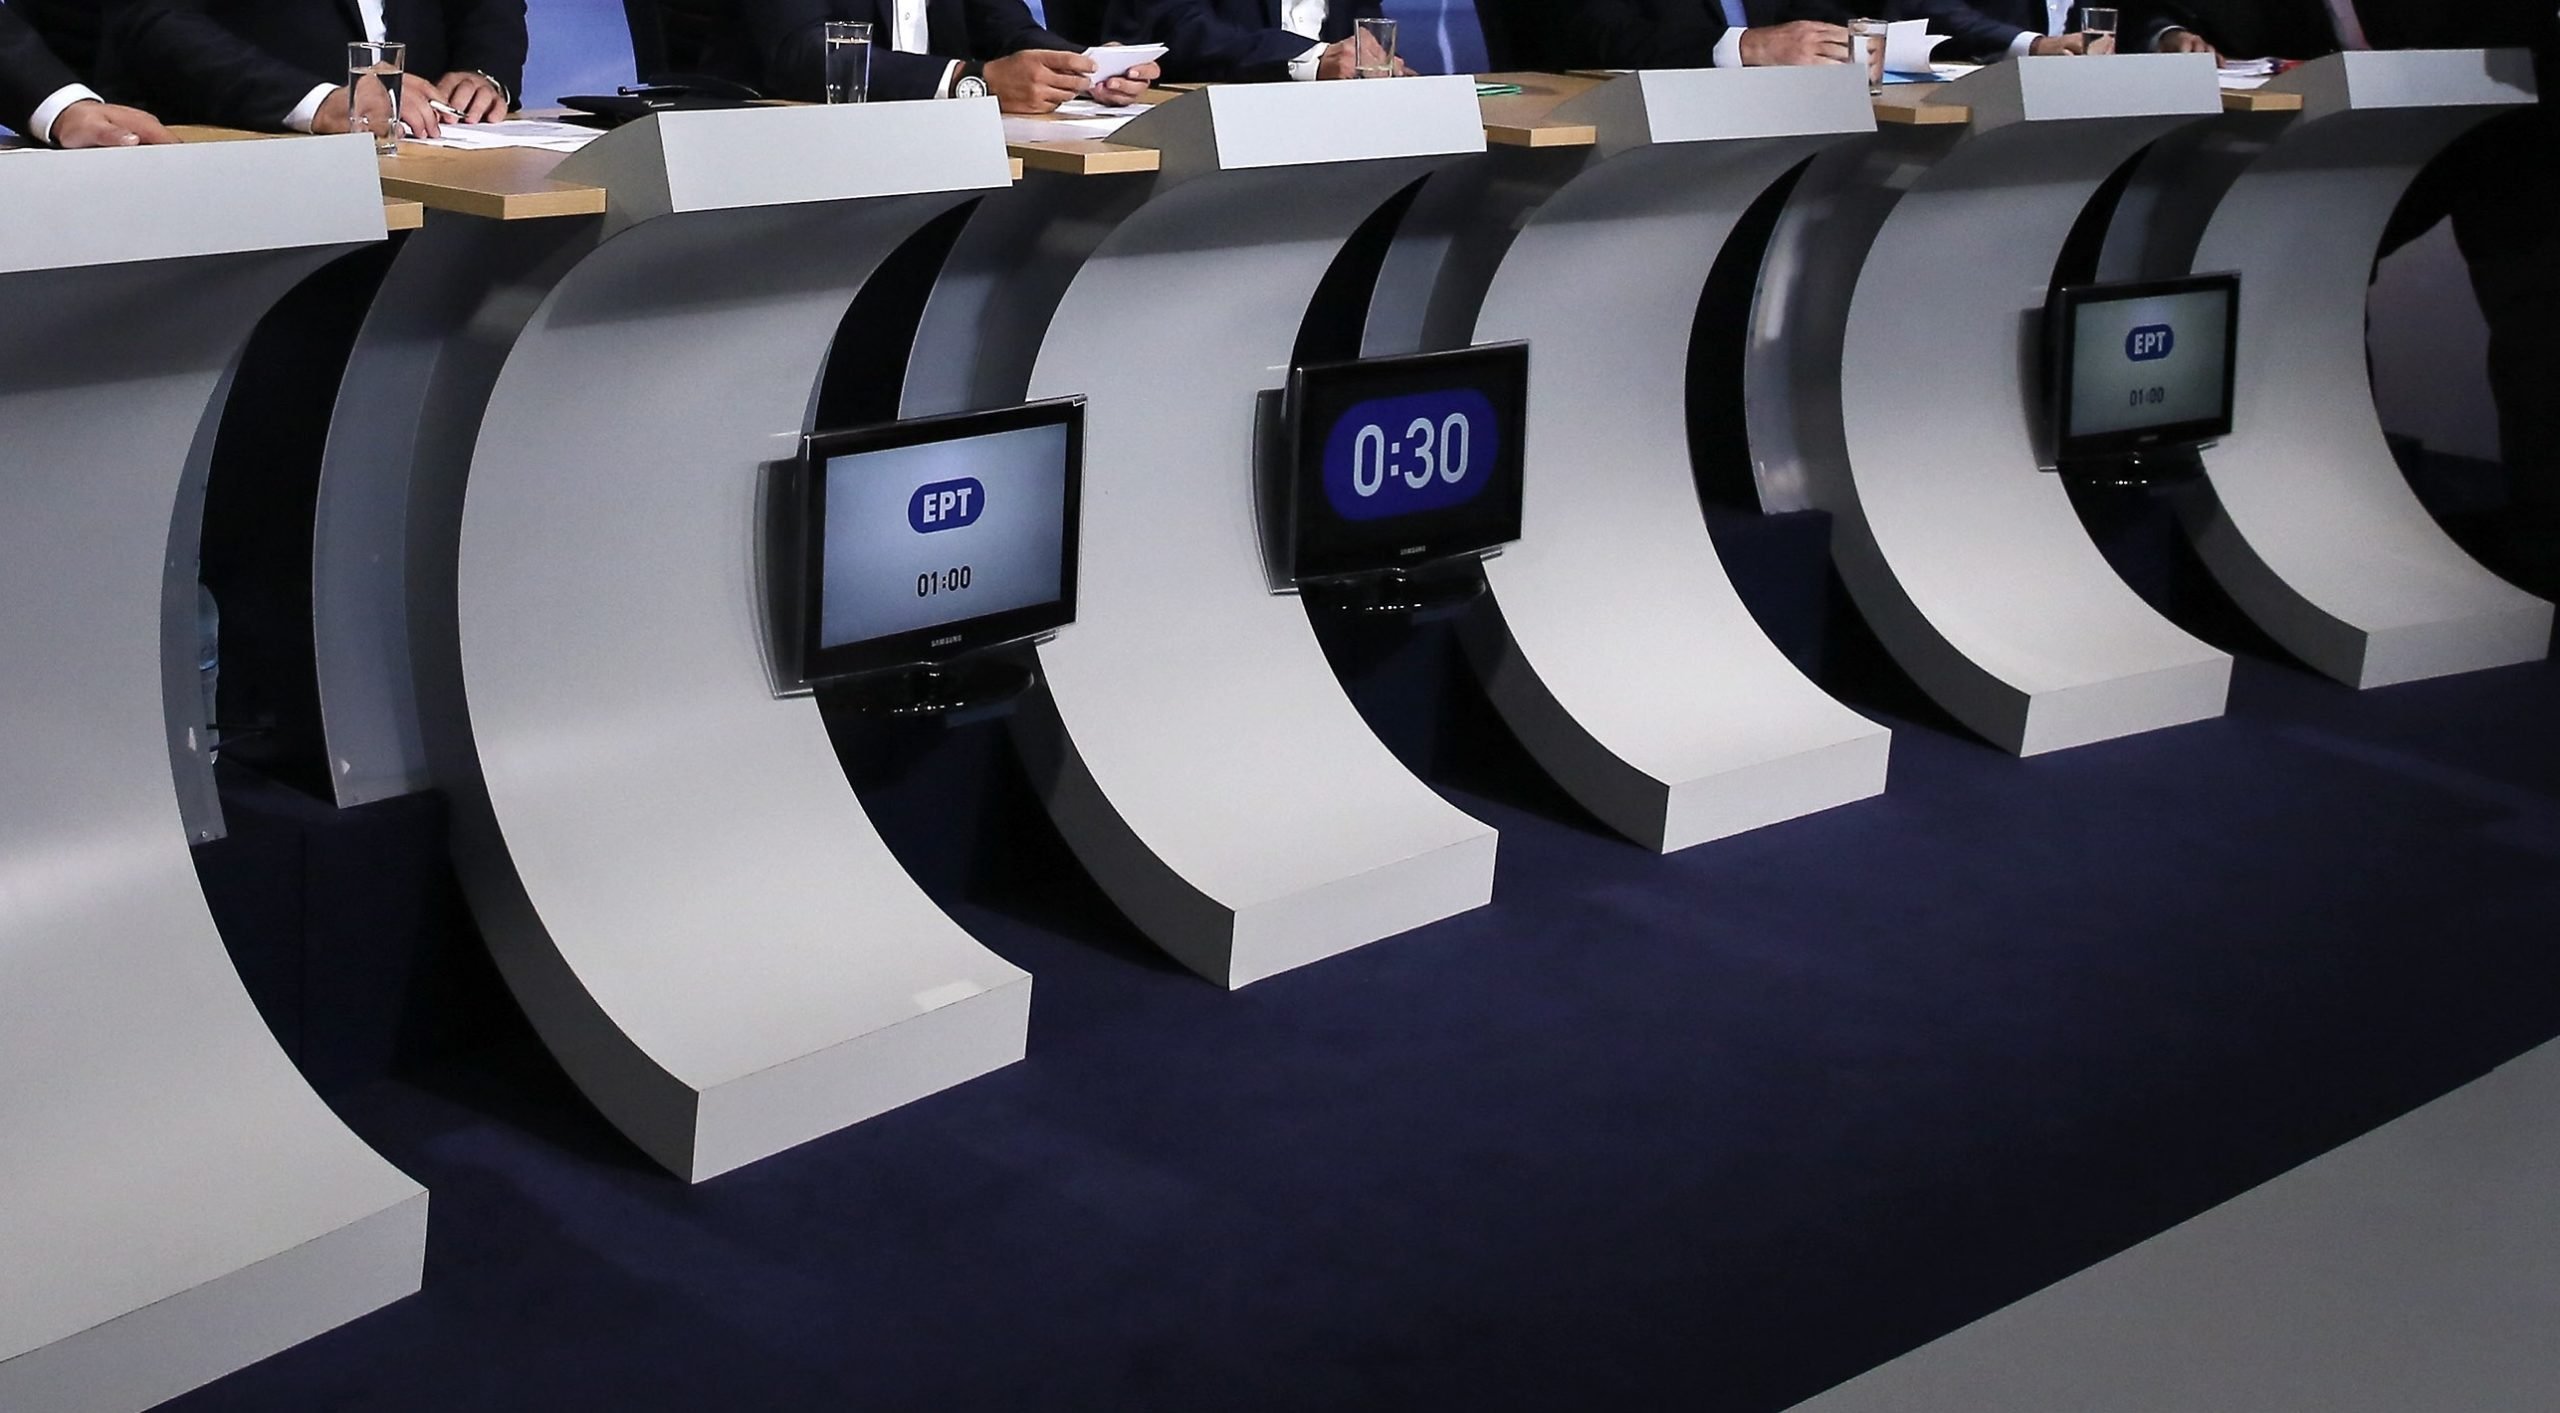 Εκλογές: Η ιστορία των debate στην Ελλάδα – Πώς έγινε η πρώτη τηλεμαχία στο Πάντειο Πανεπιστήμιο το 1990